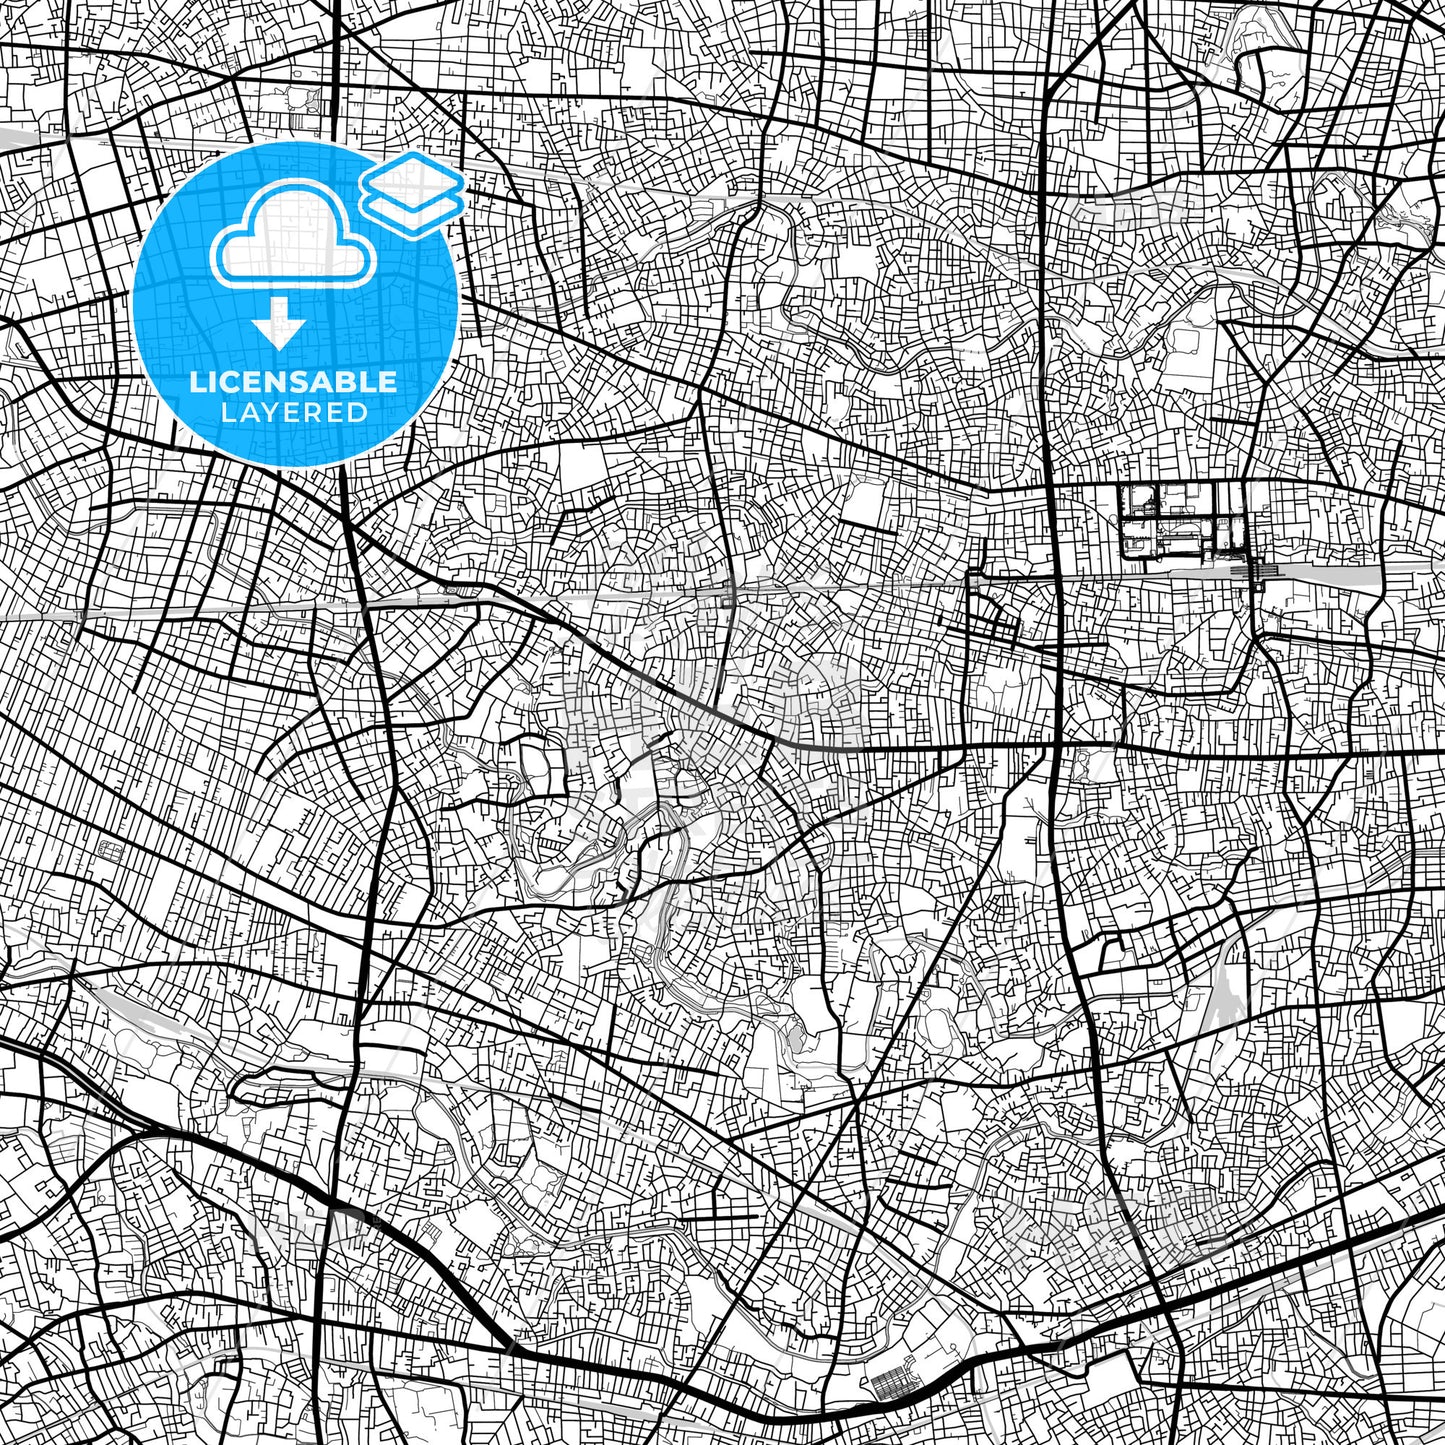 Layered PDF map of Suginami, Tokyo, Japan